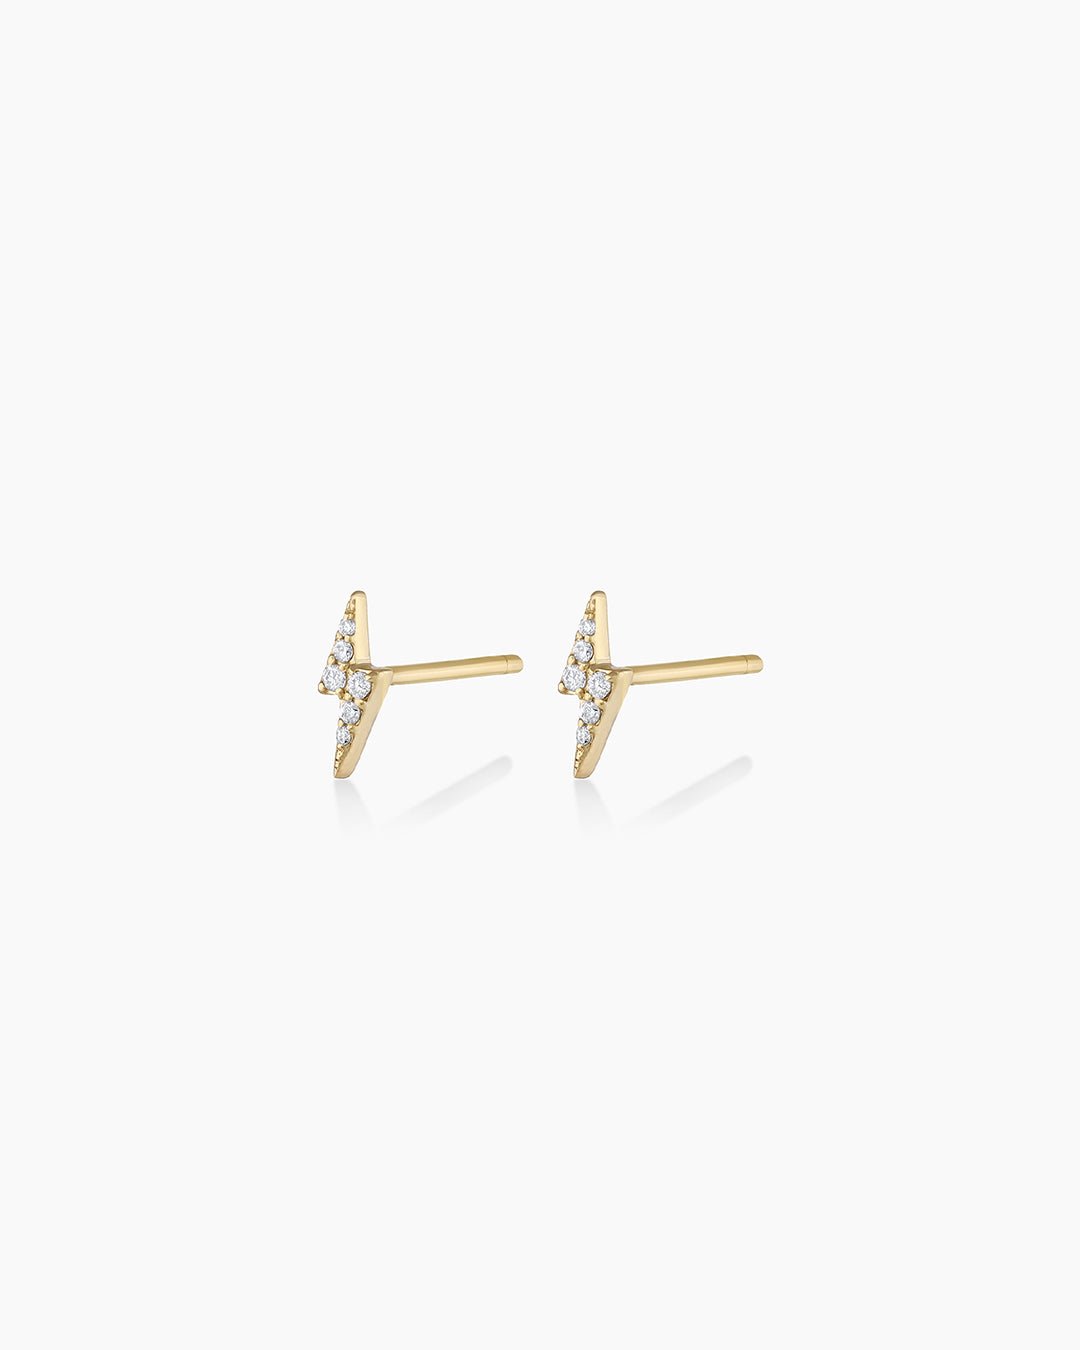 Diamond Lightning StudsLightning bolt earrings || option::14k Solid Gold, Pair